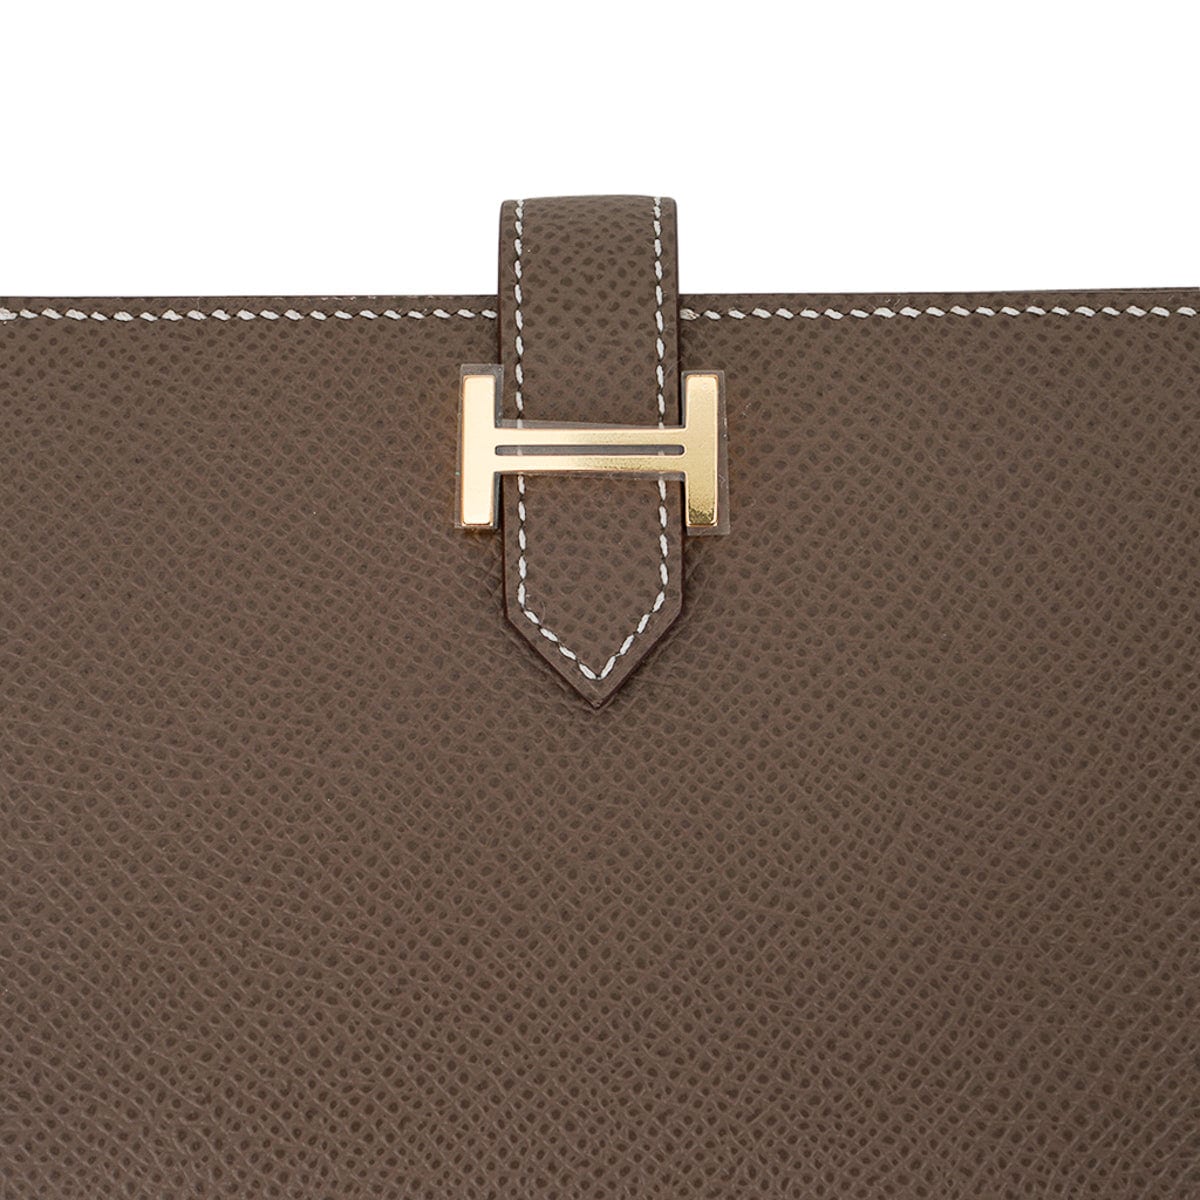 Hermes Bearn Wallet Epsom Leather Gold Hardware In Black